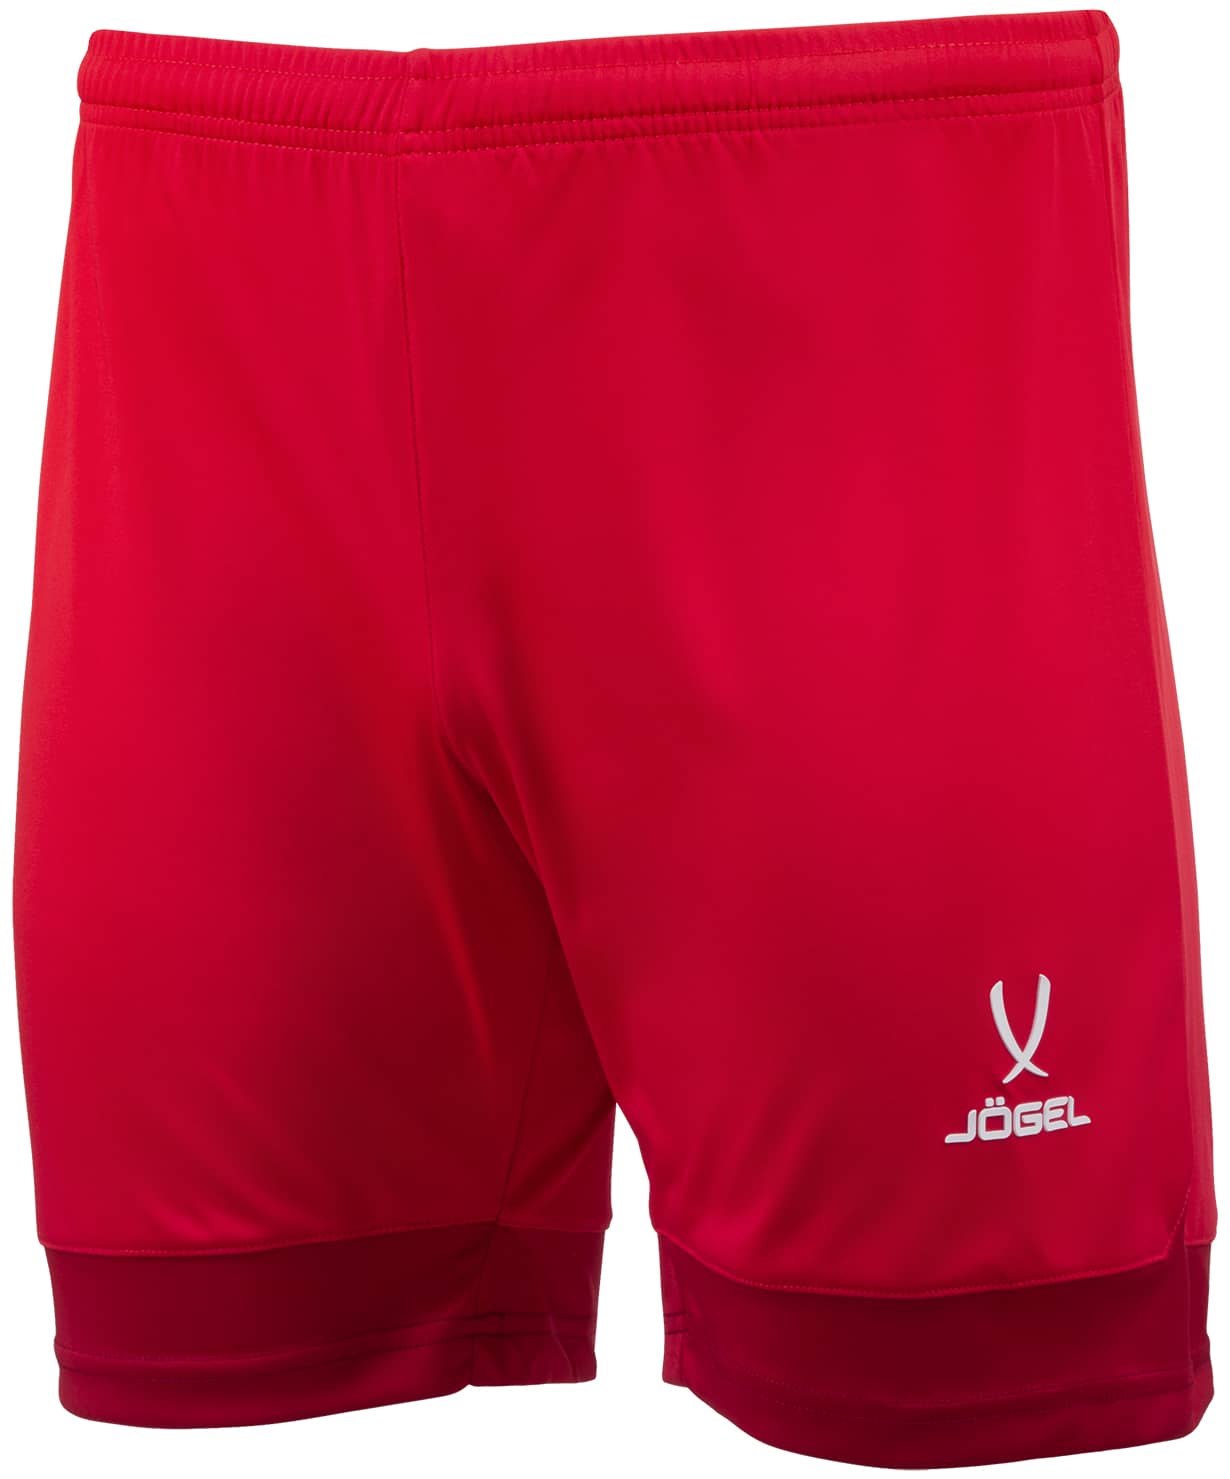 фото Шорты игровые division performdry union shorts, красный/ темно-красный/белый ym jogel